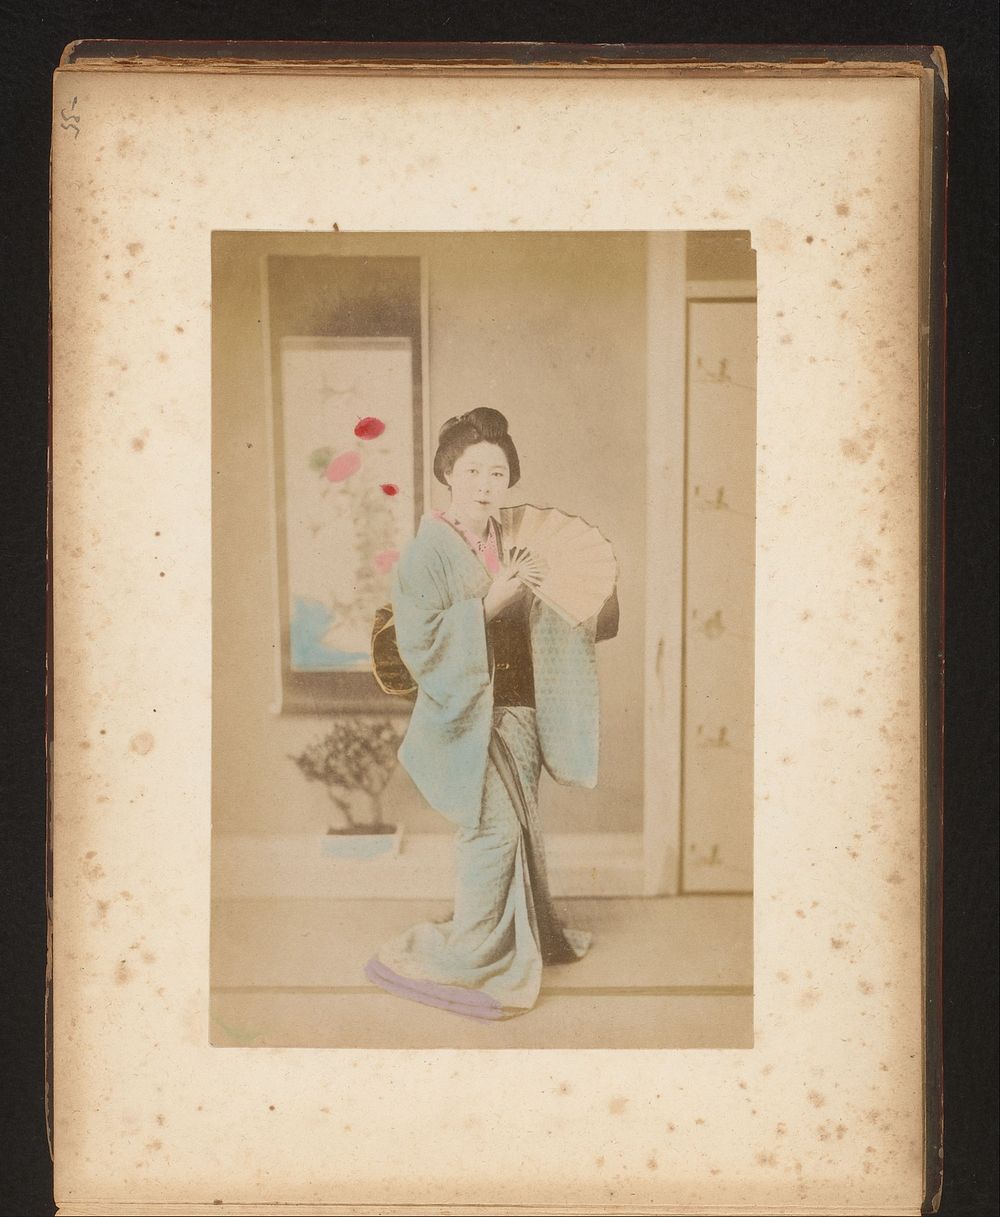 Portret van een Japanse vrouw met waaier (1851 - c. 1900) by anonymous